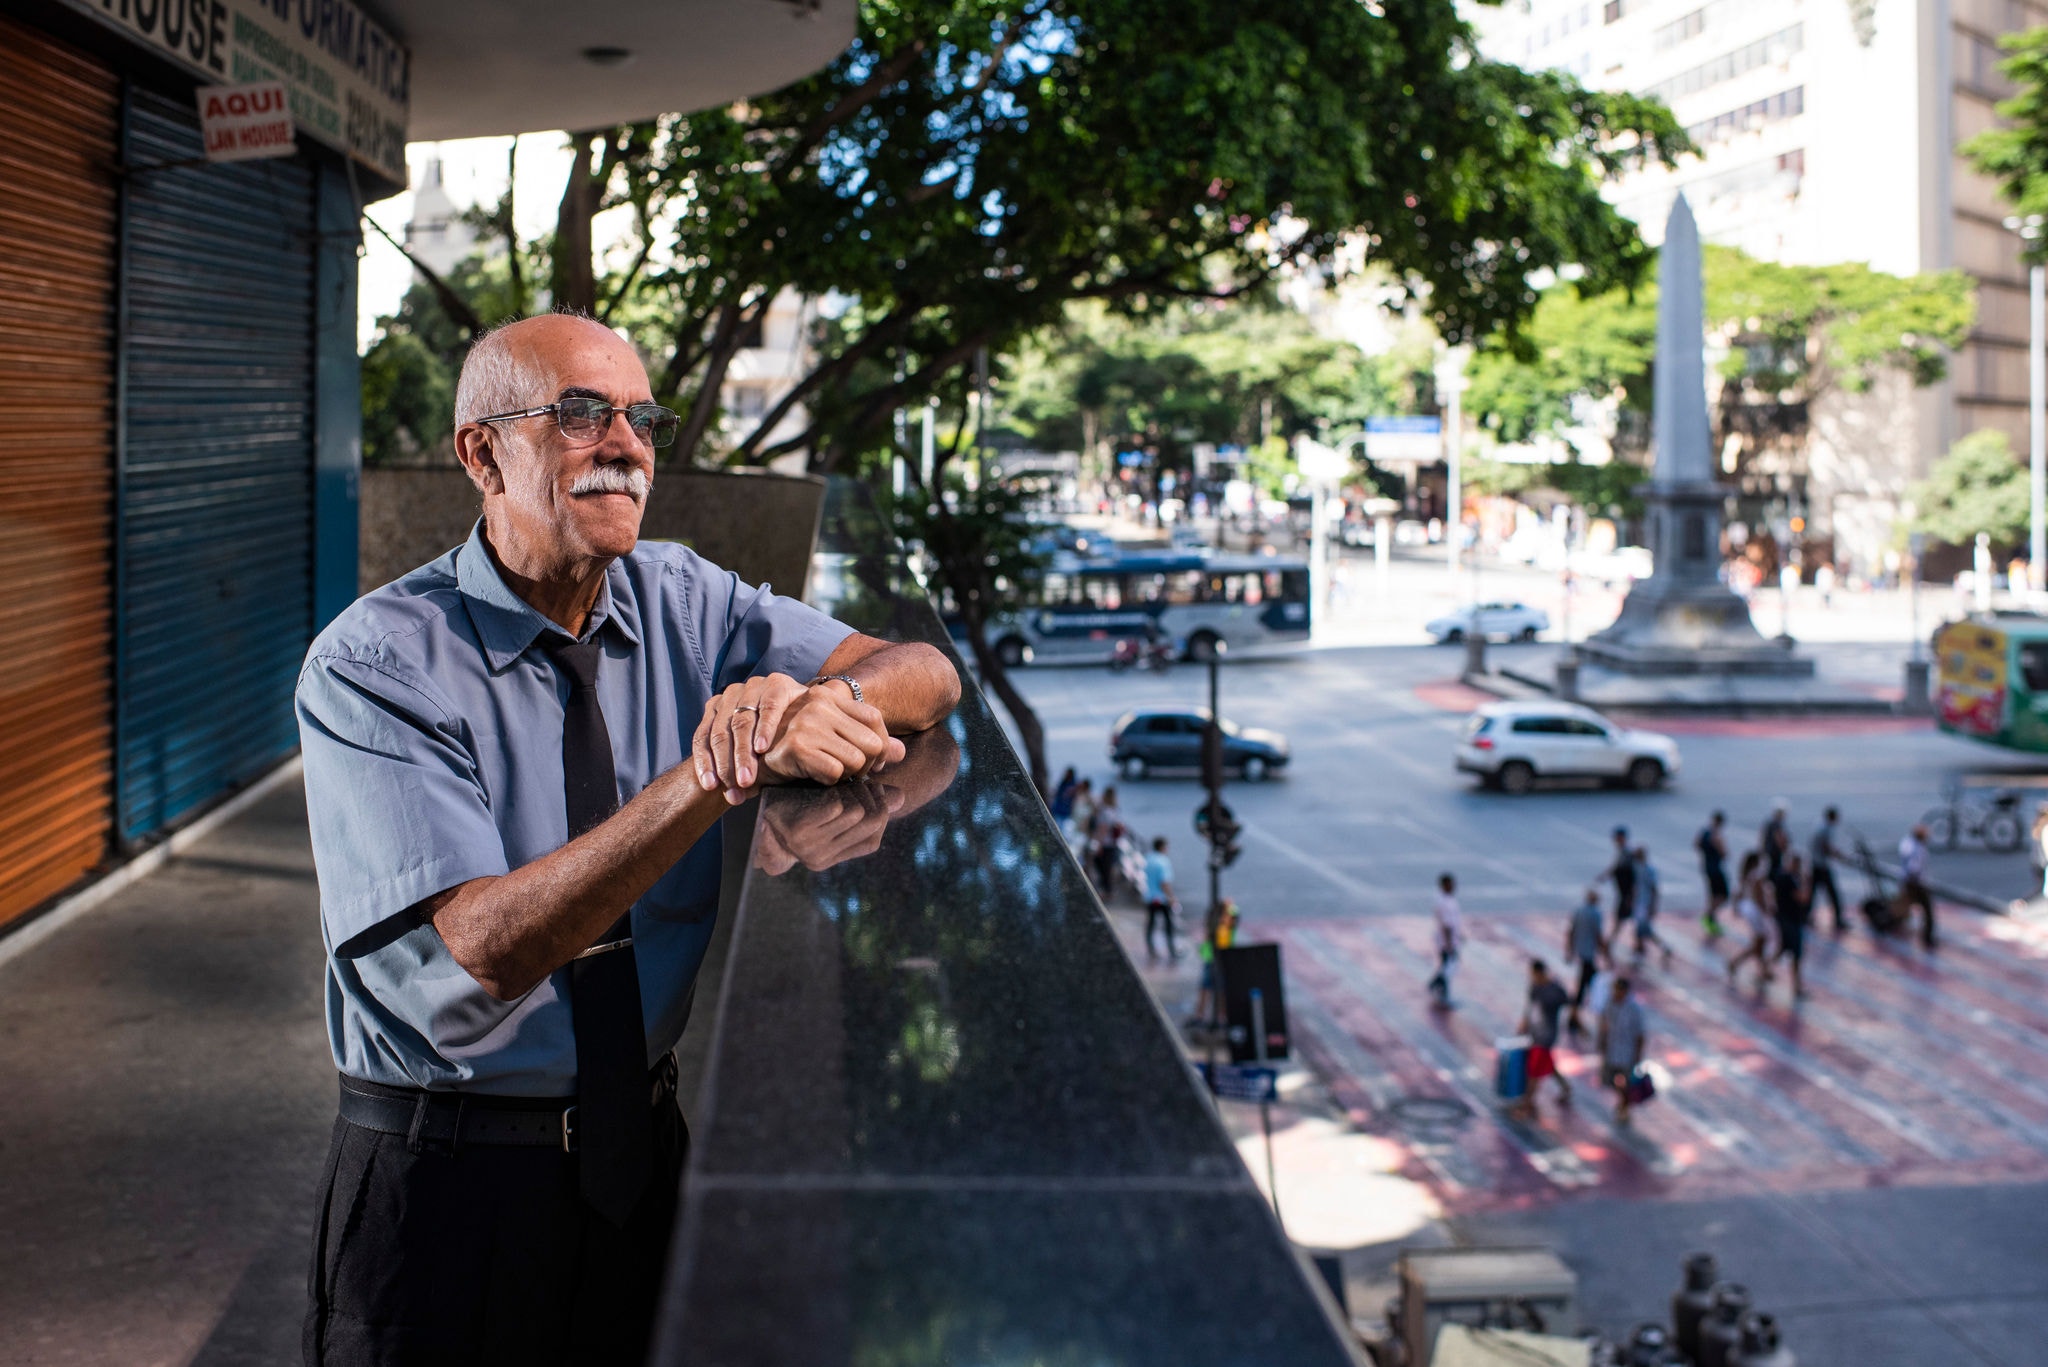 Porteiro de prédio por onde passam 1.500 pessoas por dia, Wilson, 67, diz que ama a profissão